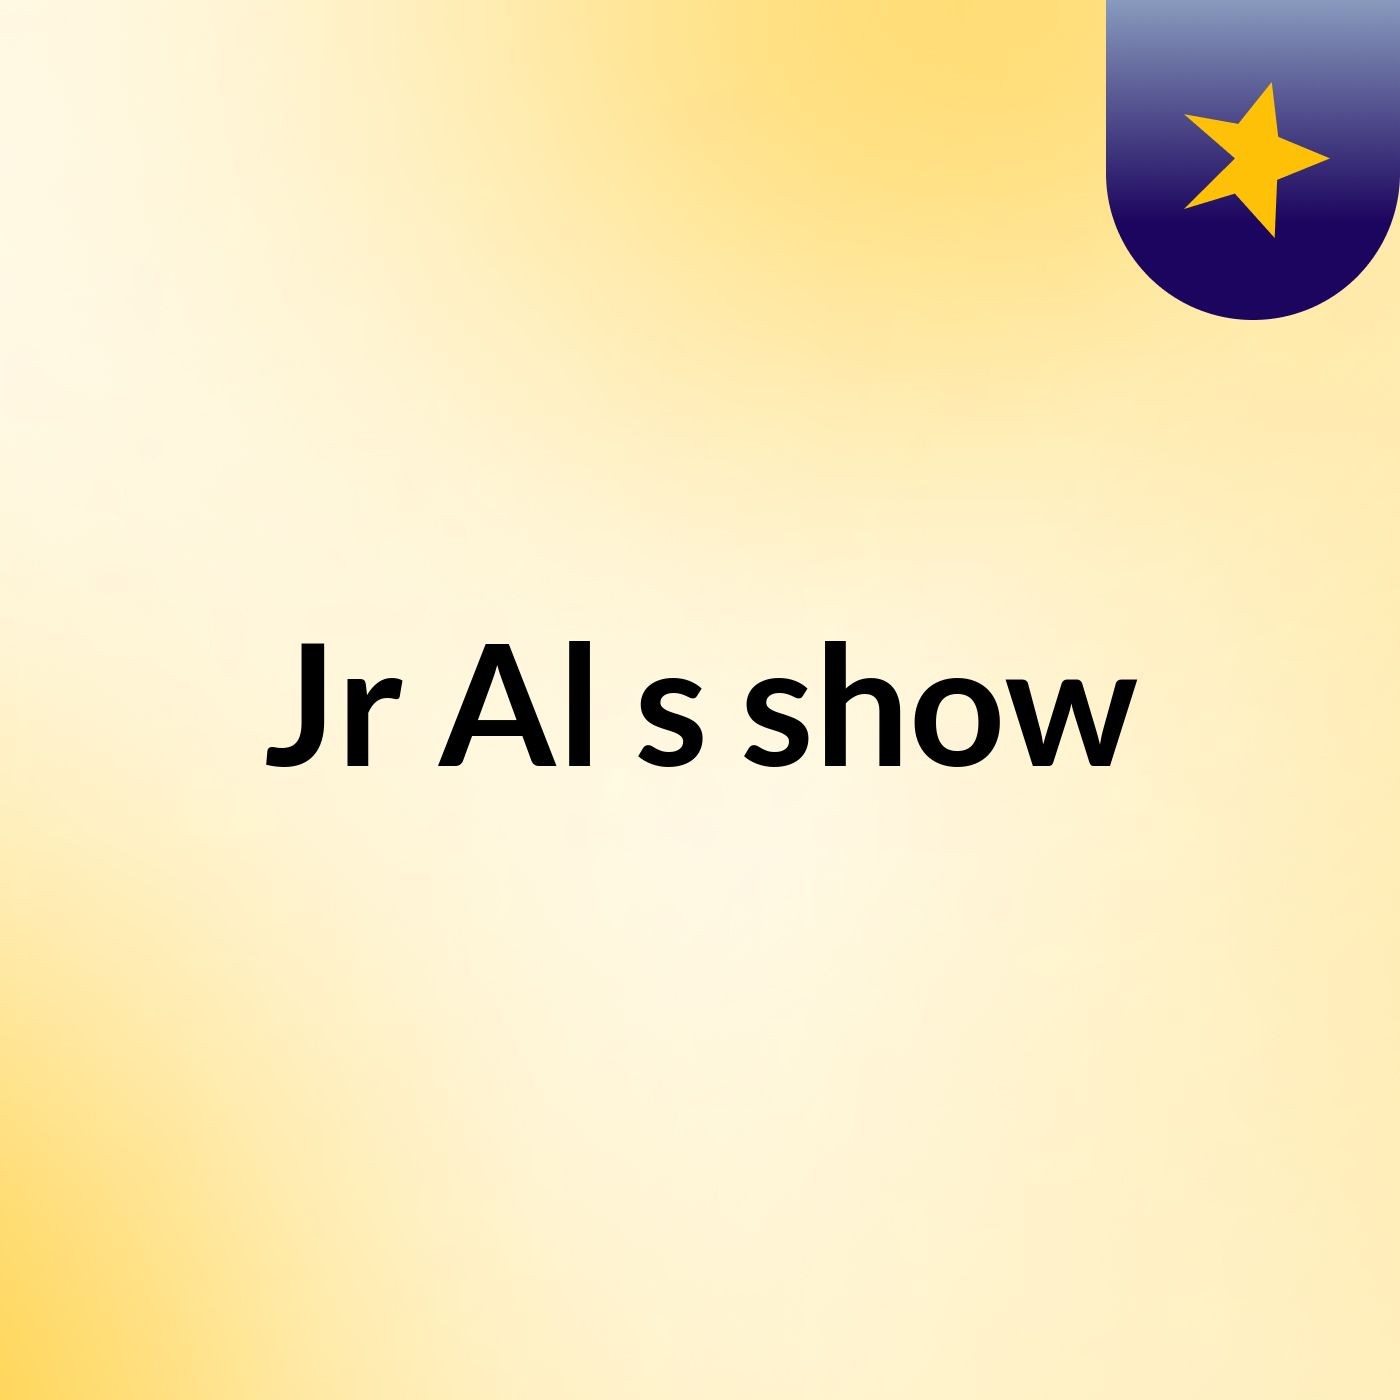 Jr Al's show